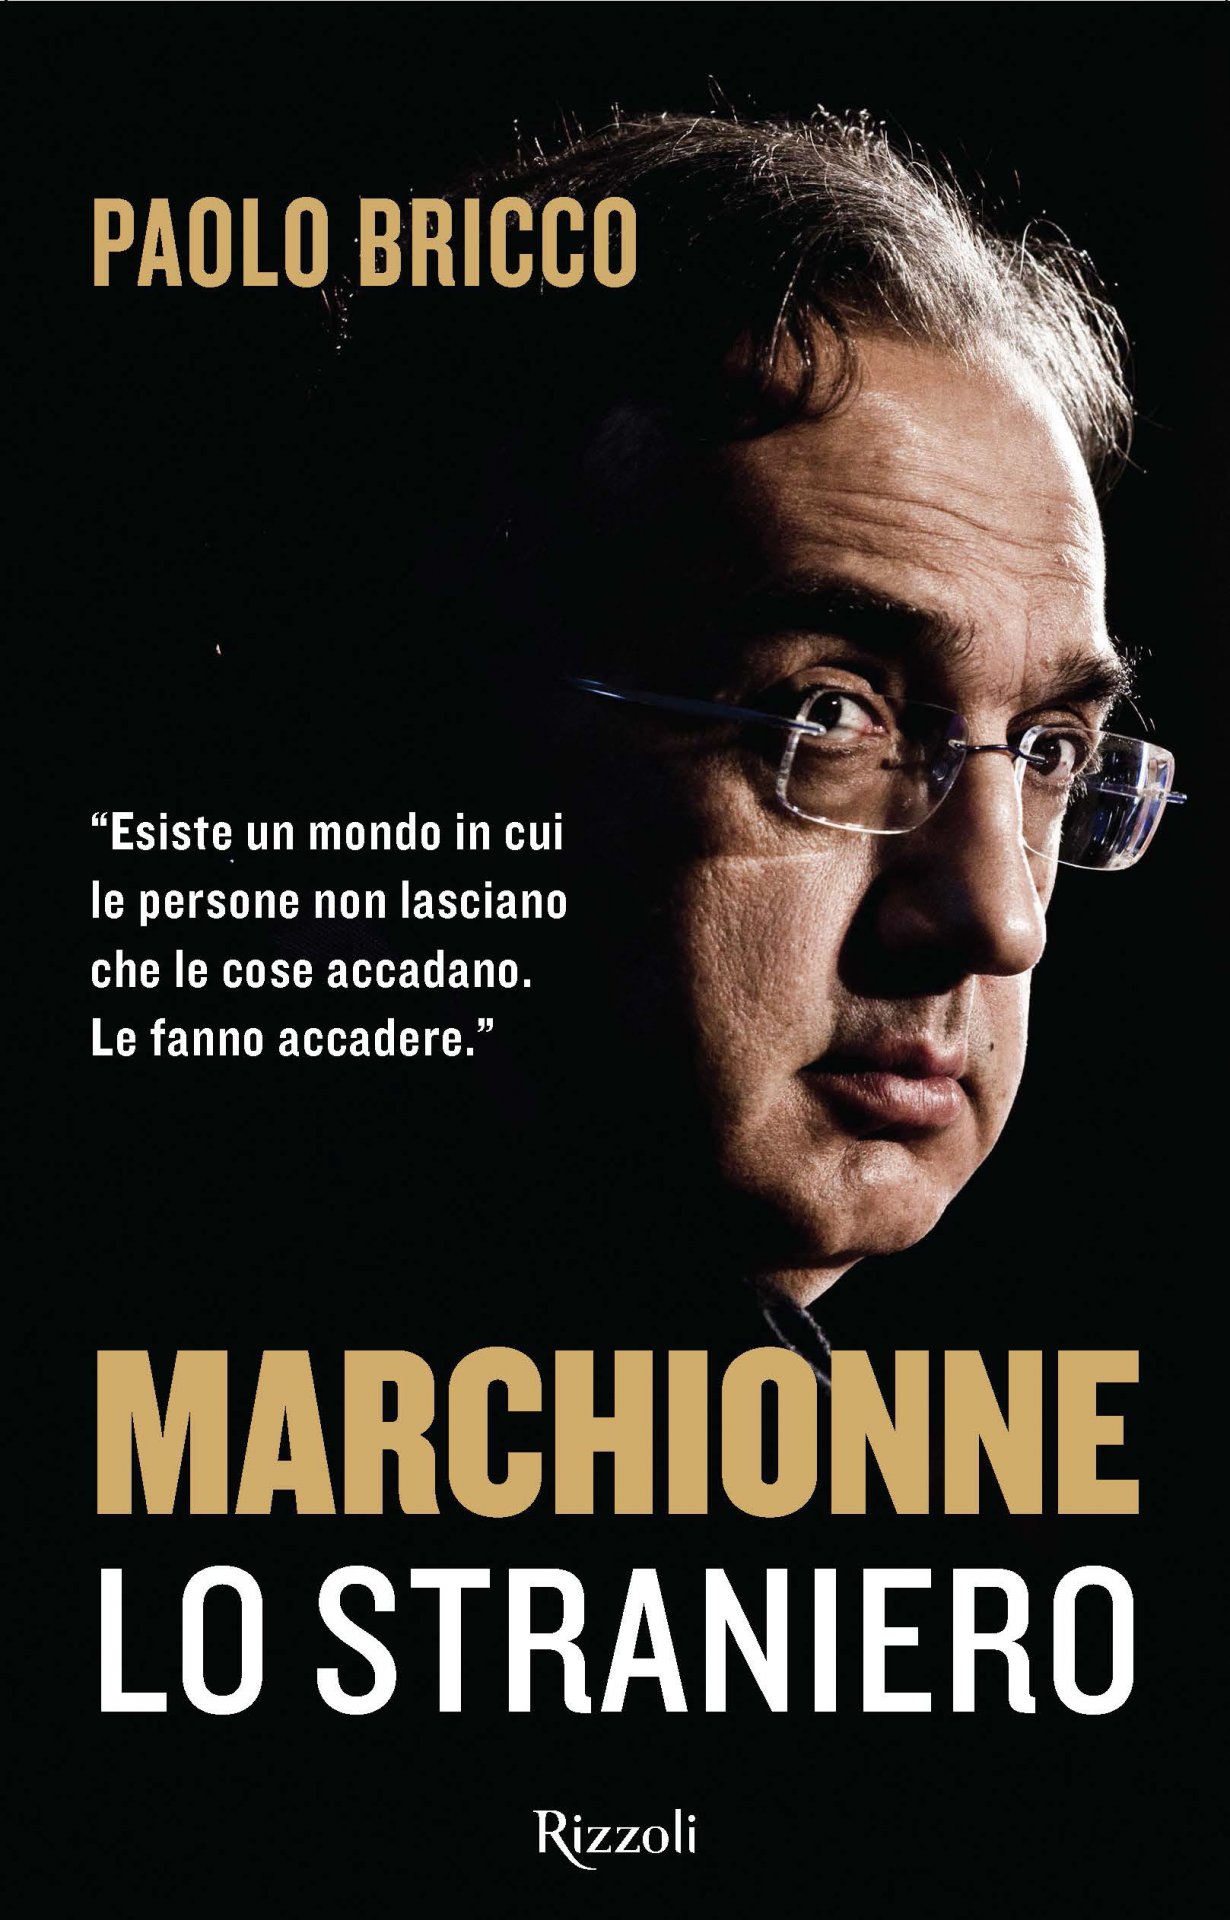 Cover libro Bricco Marchionne